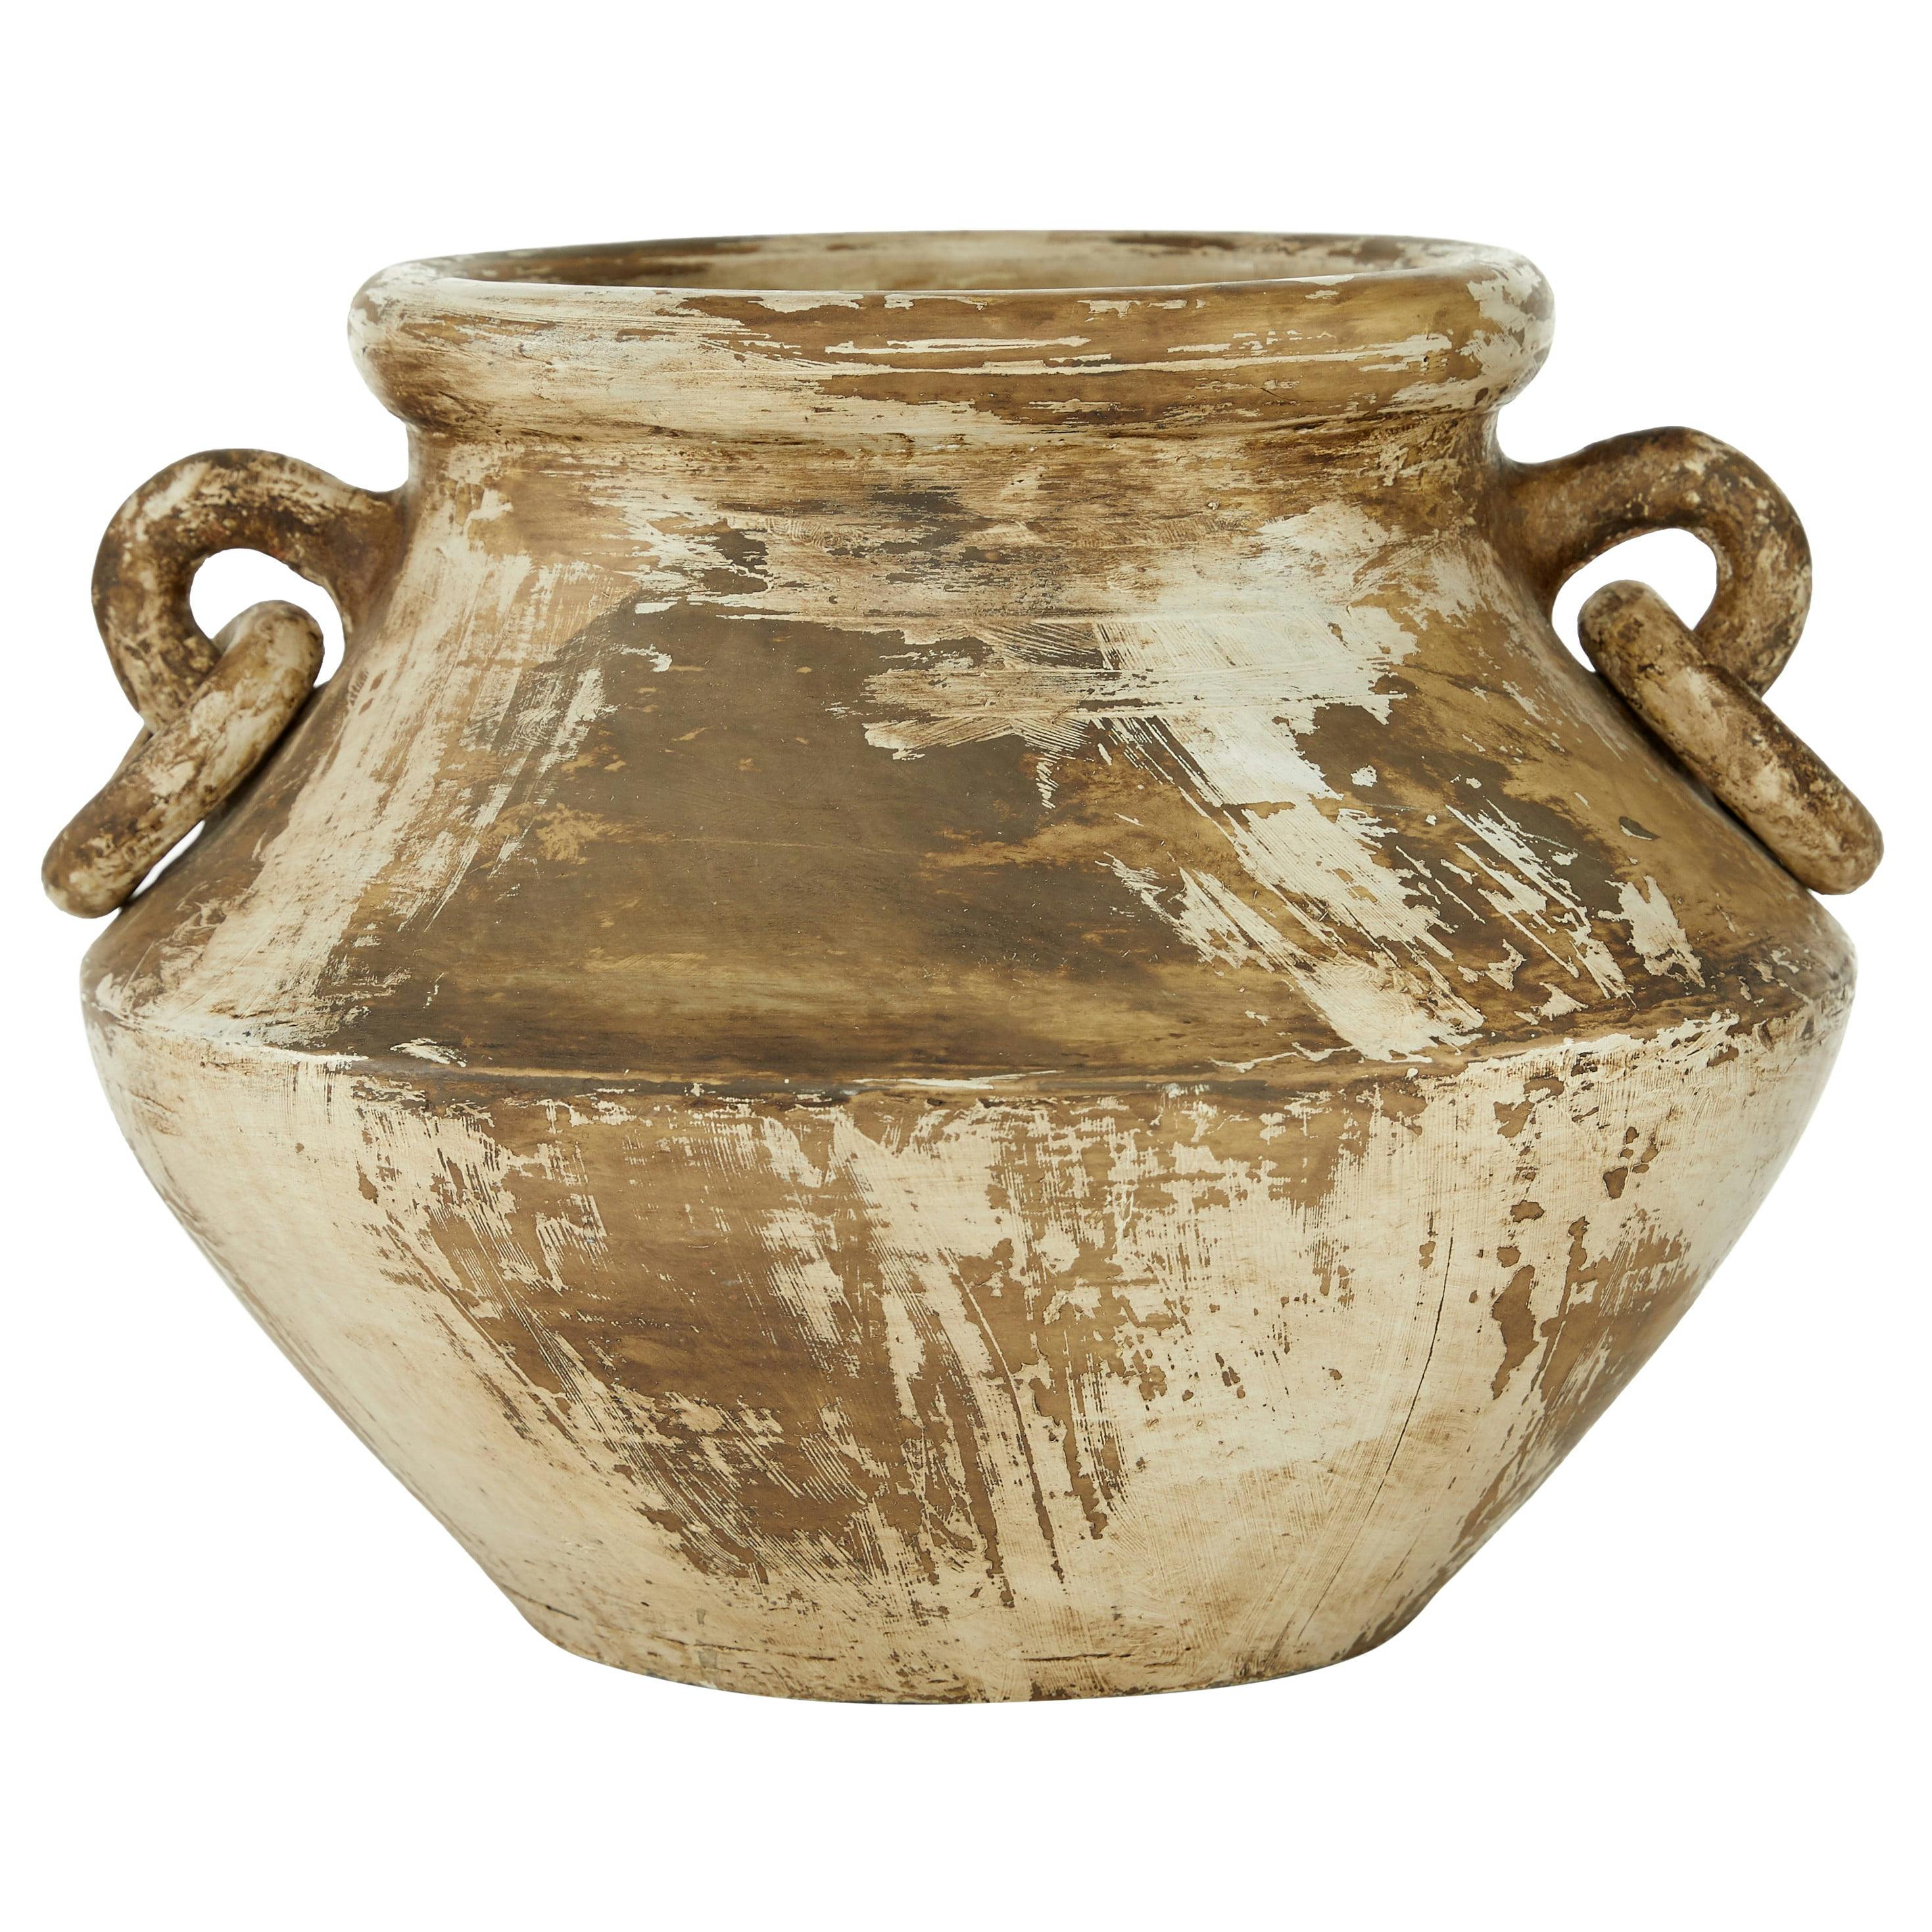 Beige Distressed Solid Amphora Ceramic Vase 13" x 13" x 10"